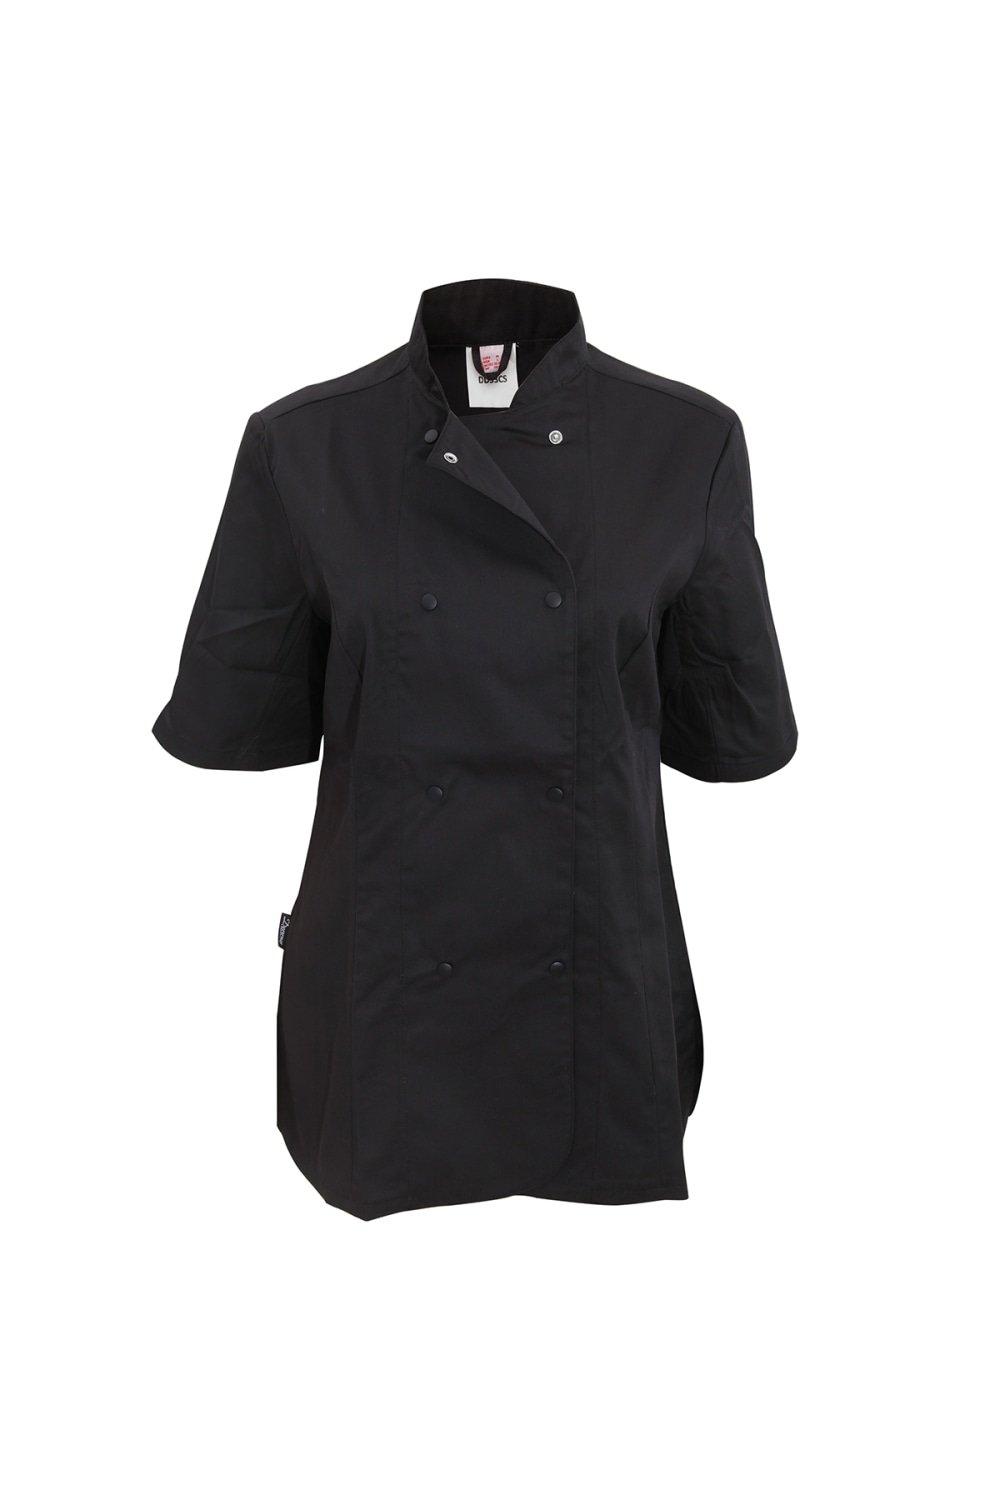 Приталенная куртка шеф-повара с короткими рукавами (2 шт.) Dennys, черный 40 шт шары из фольги в виде цифр 32 дюйма